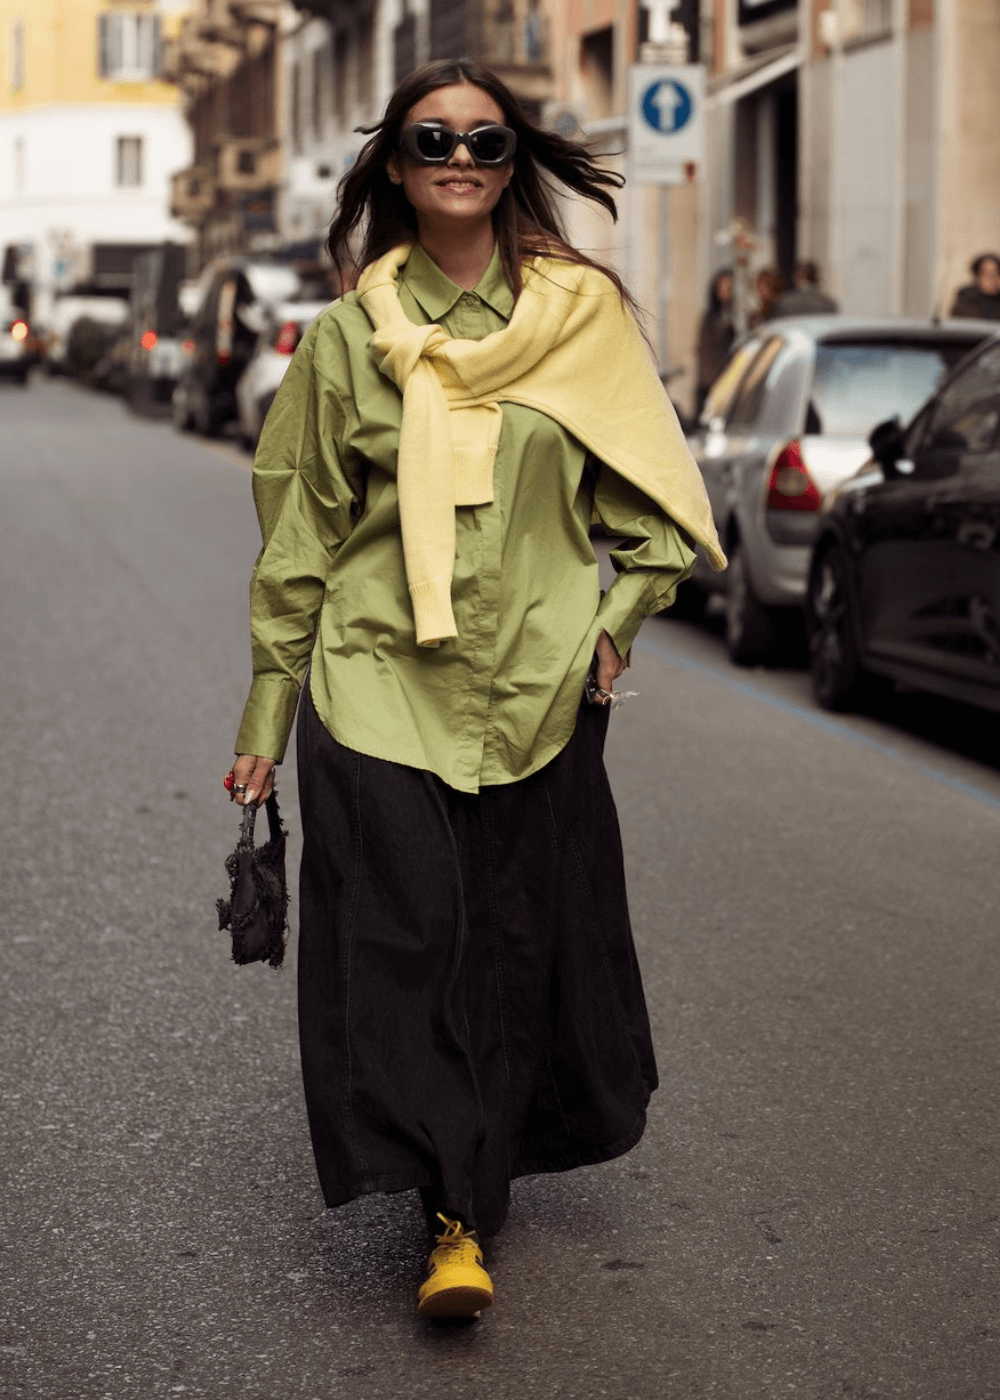 Street Style de Milão - saia longa preta, camisa verde overiszed, tênis amarelo e óculos - street style de Milão - inverno - mulher de óculos andando na rua - https://stealthelook.com.br